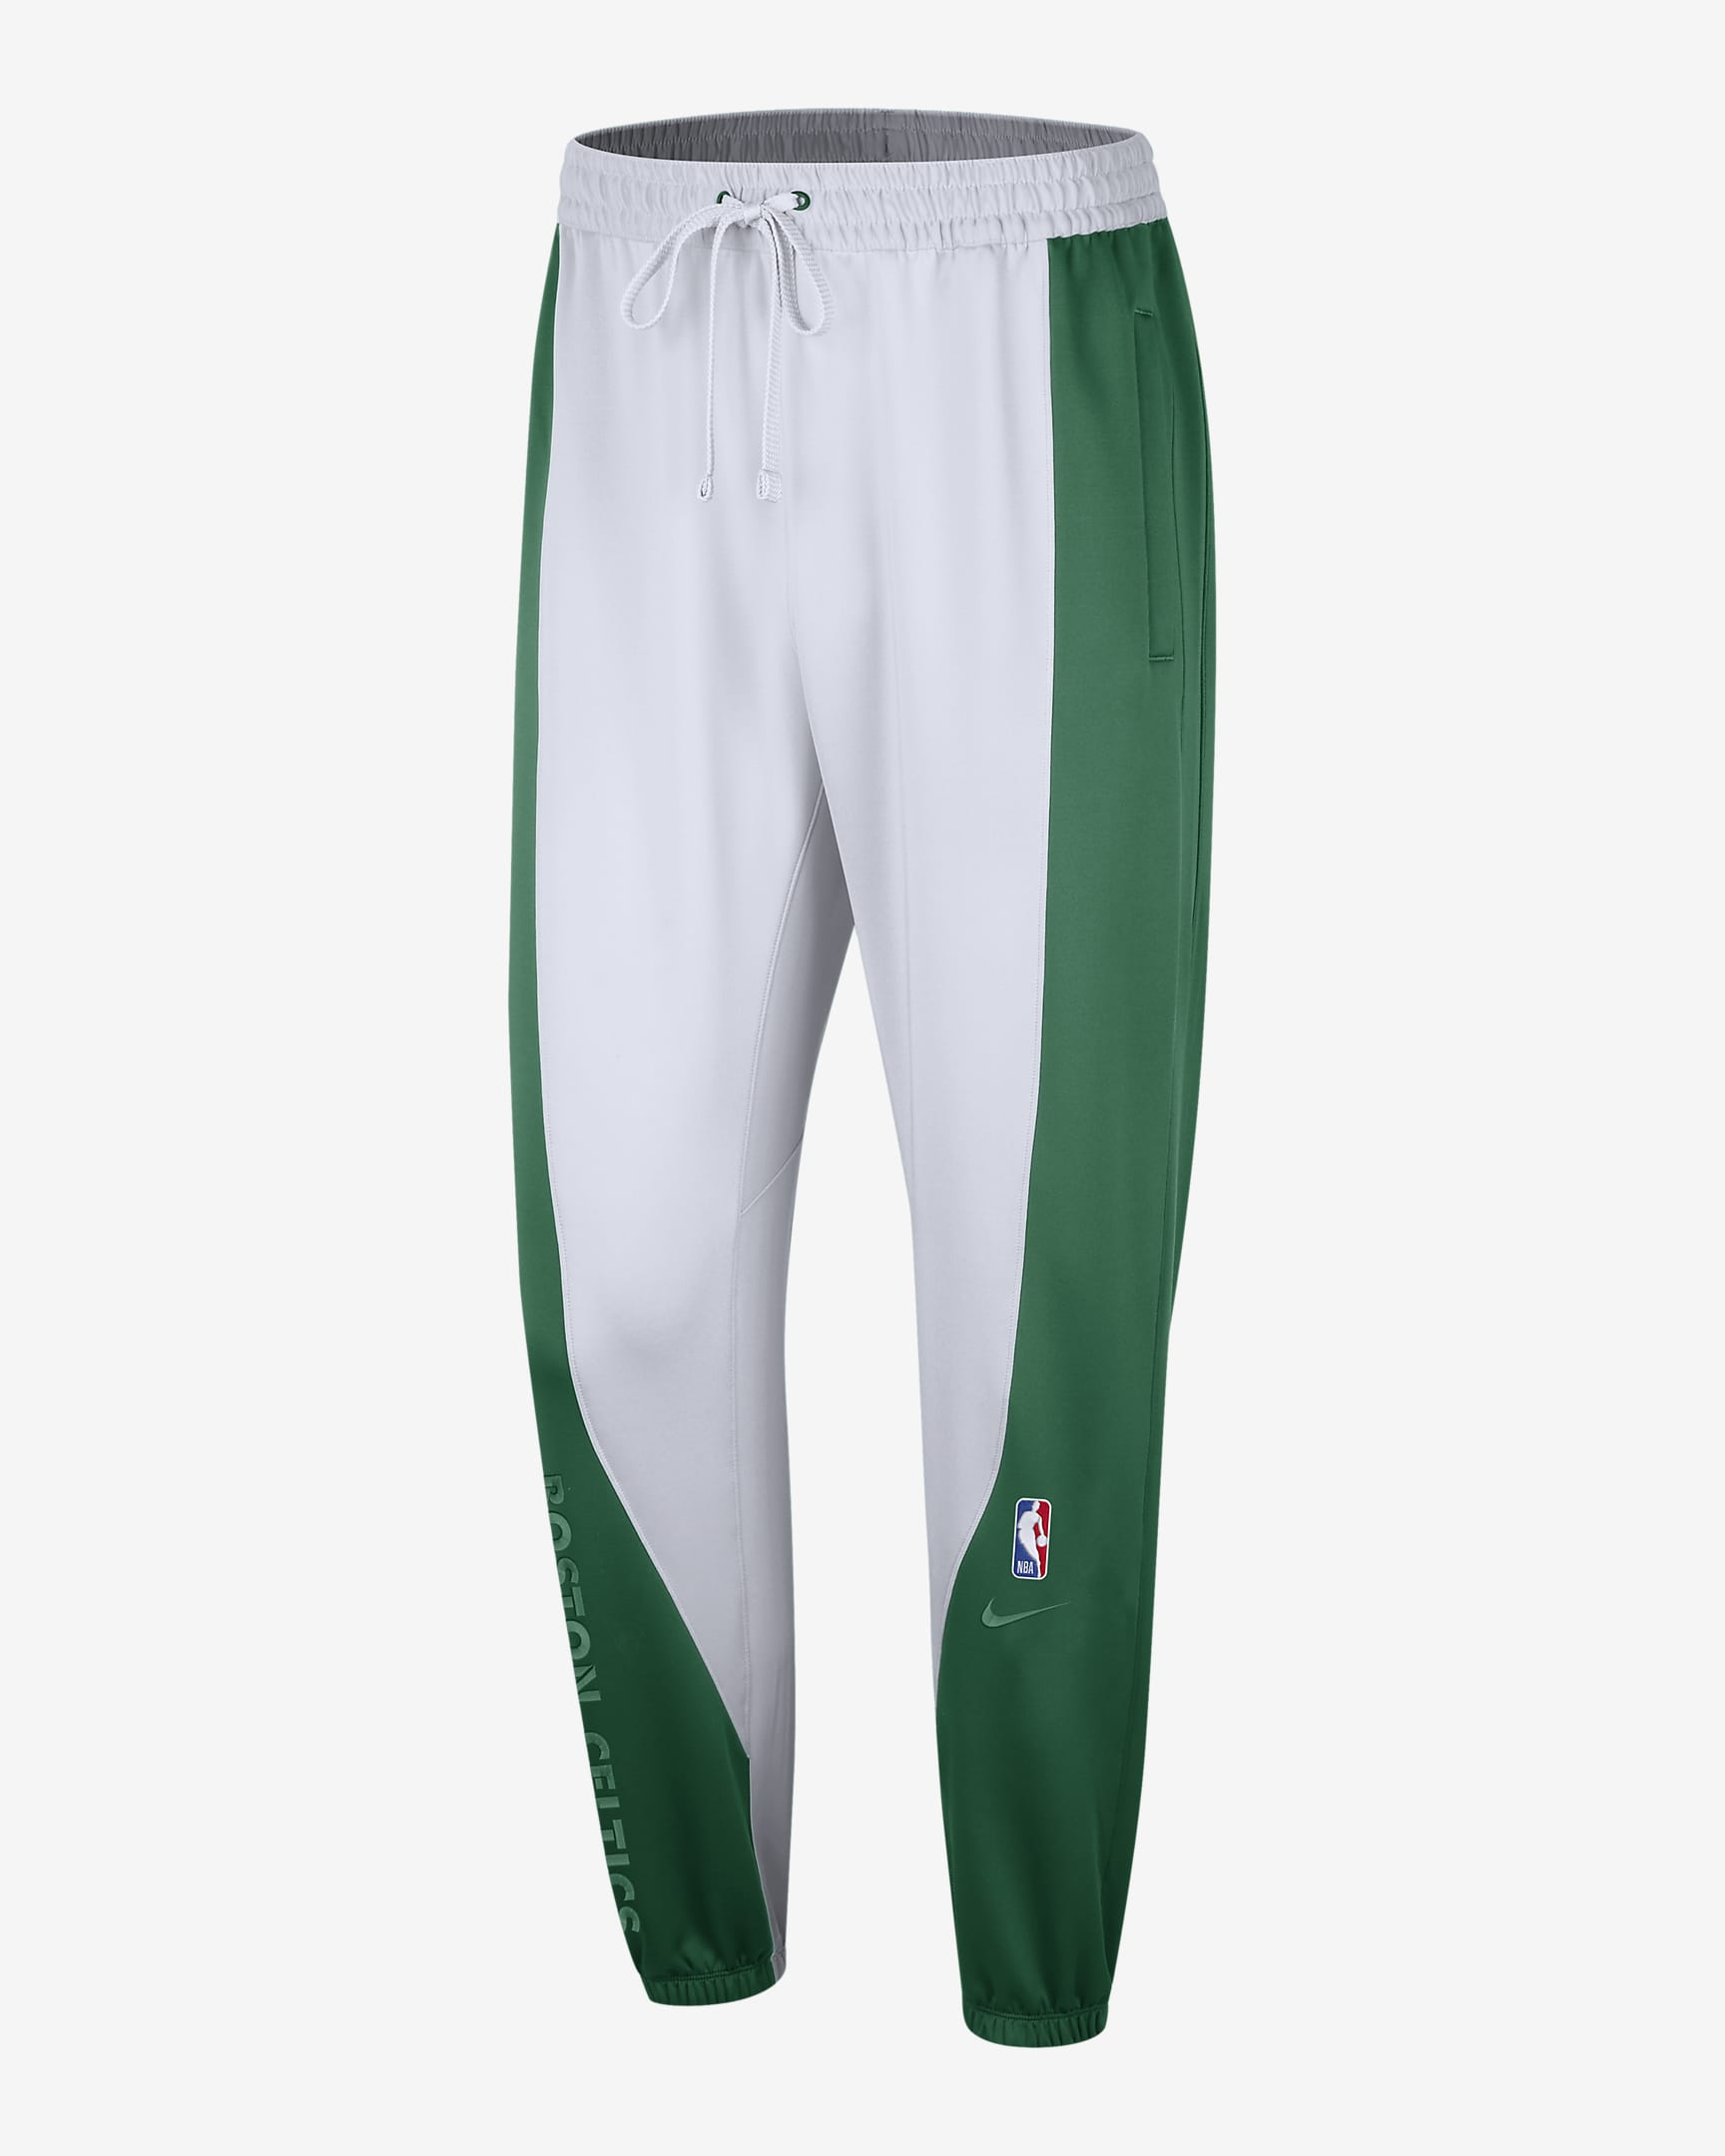 Boston Celtics Showtime Men's Nike Dri-FIT NBA Trousers. Nike HR